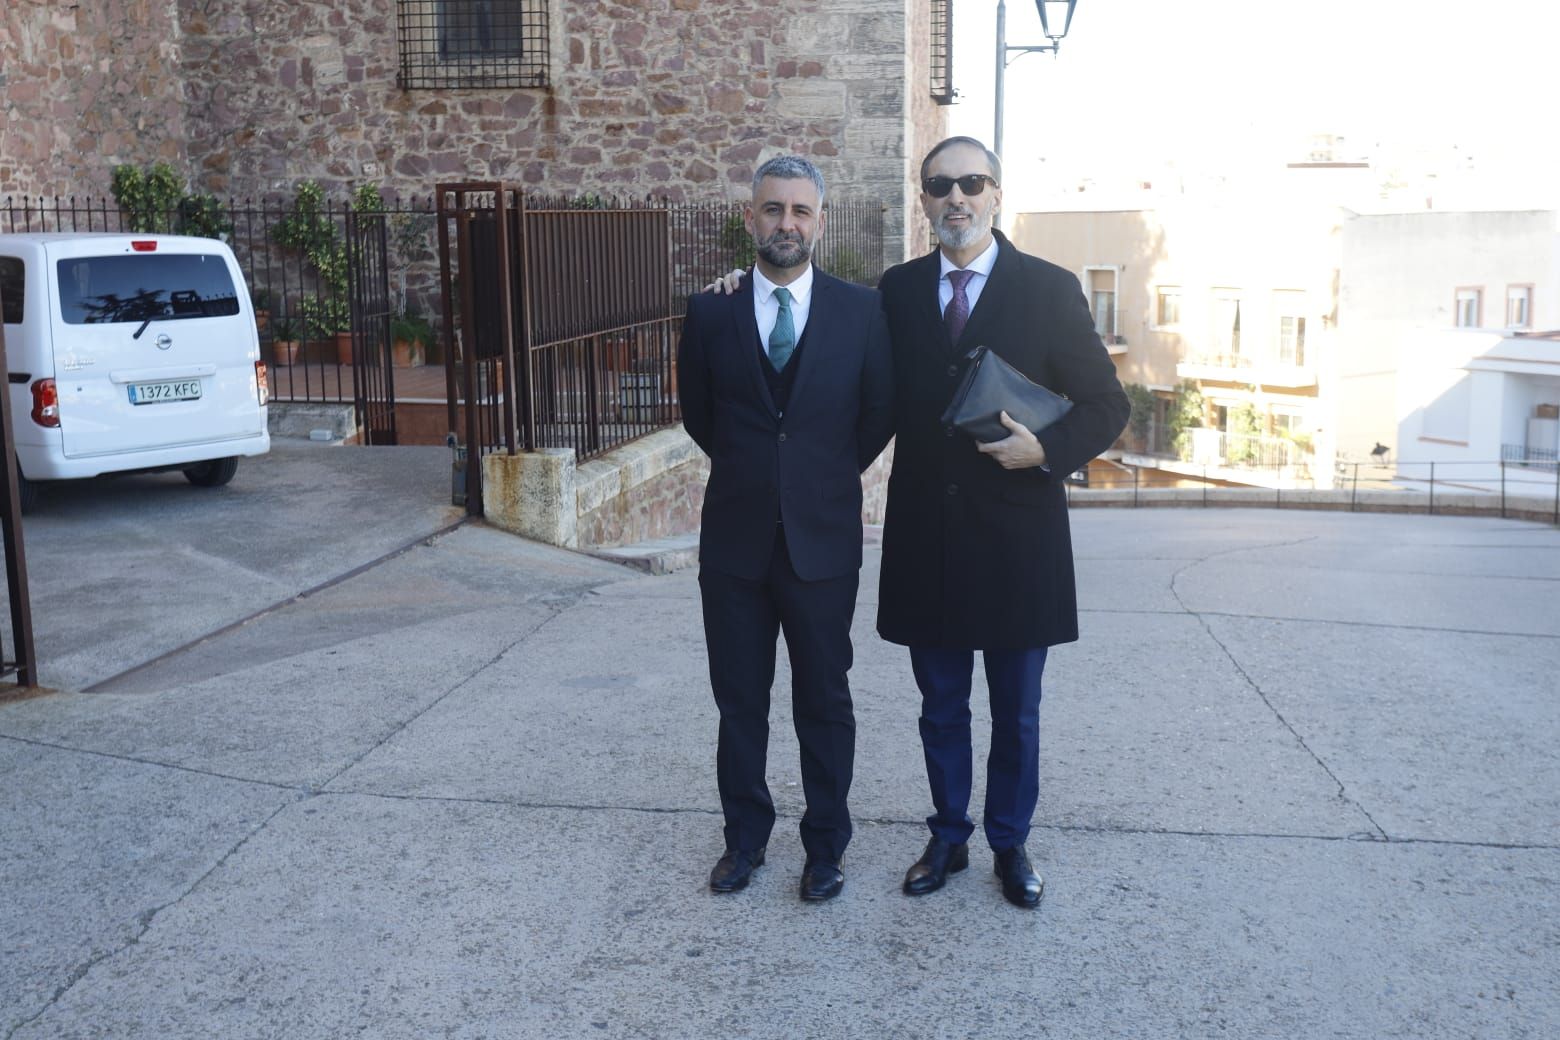 La boda de la concejala y fallera mayor de València de 2018, Rocío Gil, en imágenes